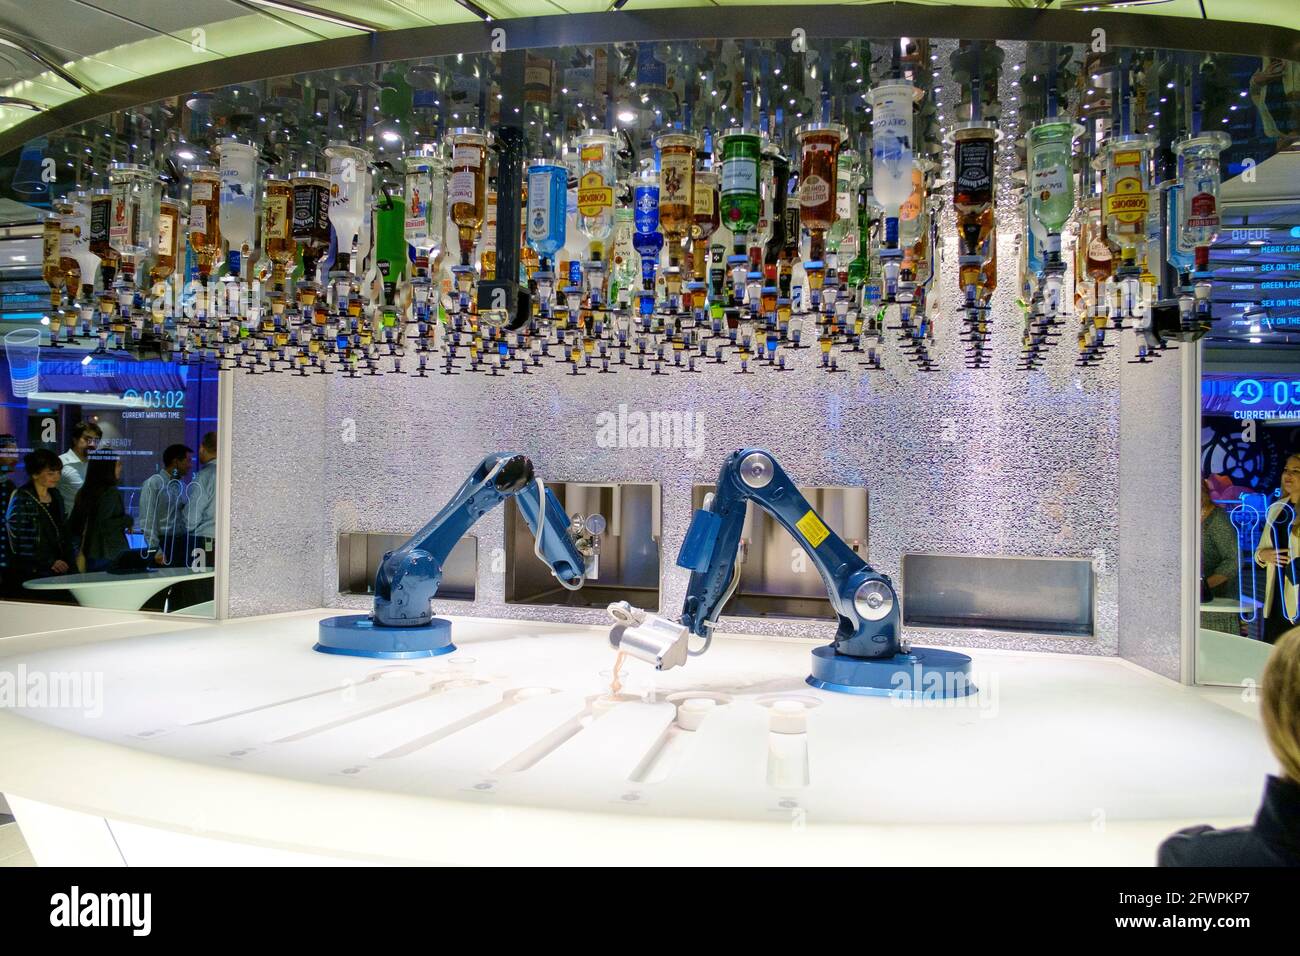 Die Bionic Bar an Bord des Royal Caribbean-Schiffes Anthem of the Seas. Die Barkeeper von Robotic mischen und servieren den Gästen Cocktails. Stockfoto